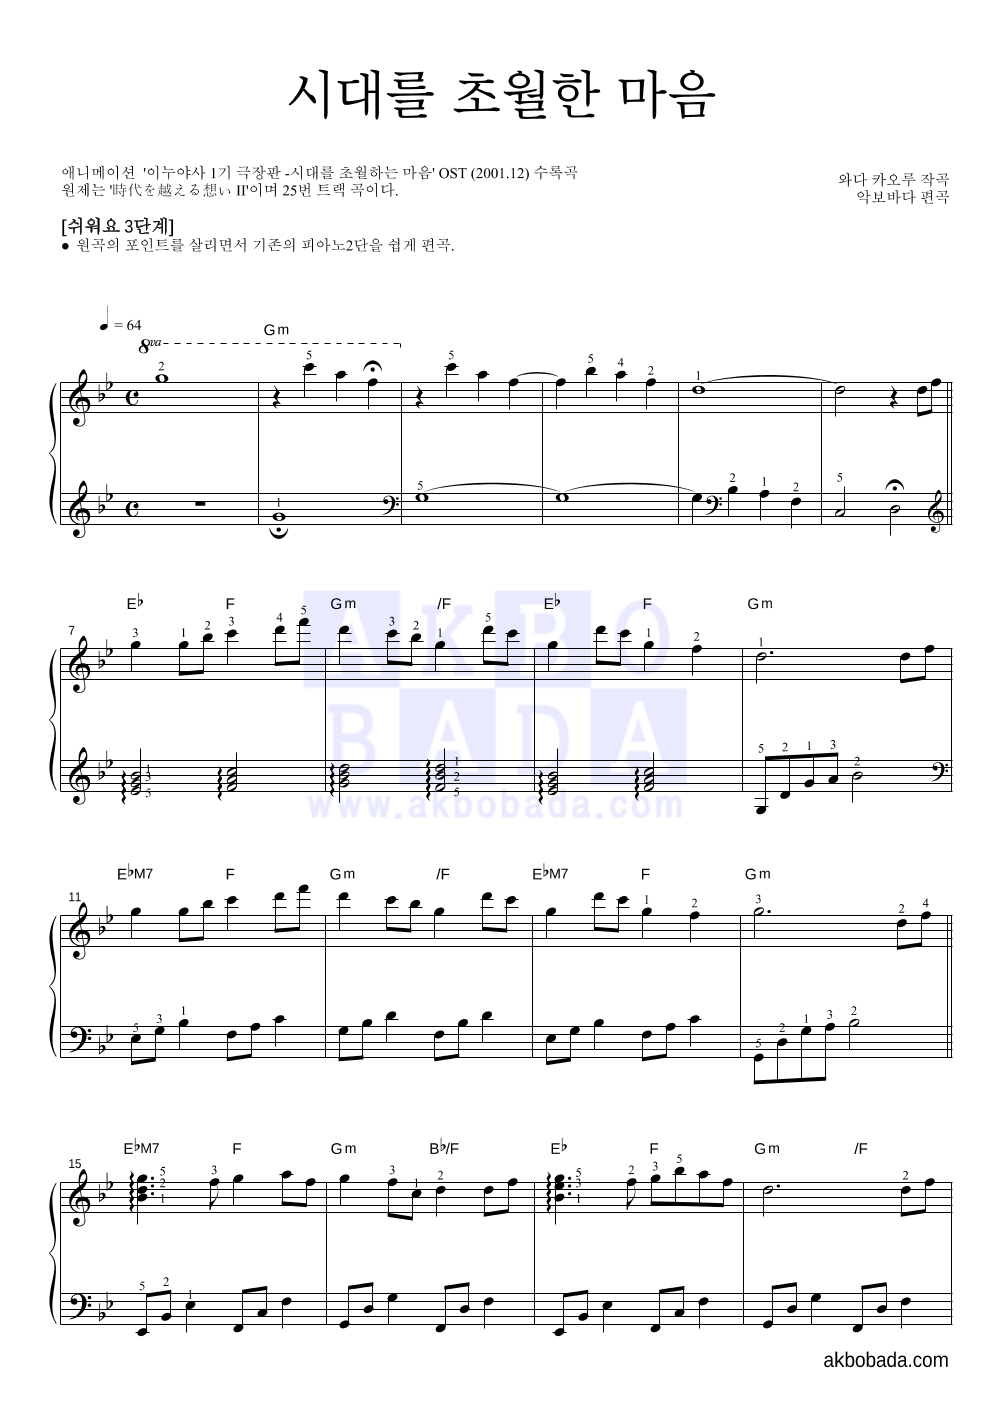 이누야사 OST - 시대를 초월한 마음 피아노2단-쉬워요 악보 